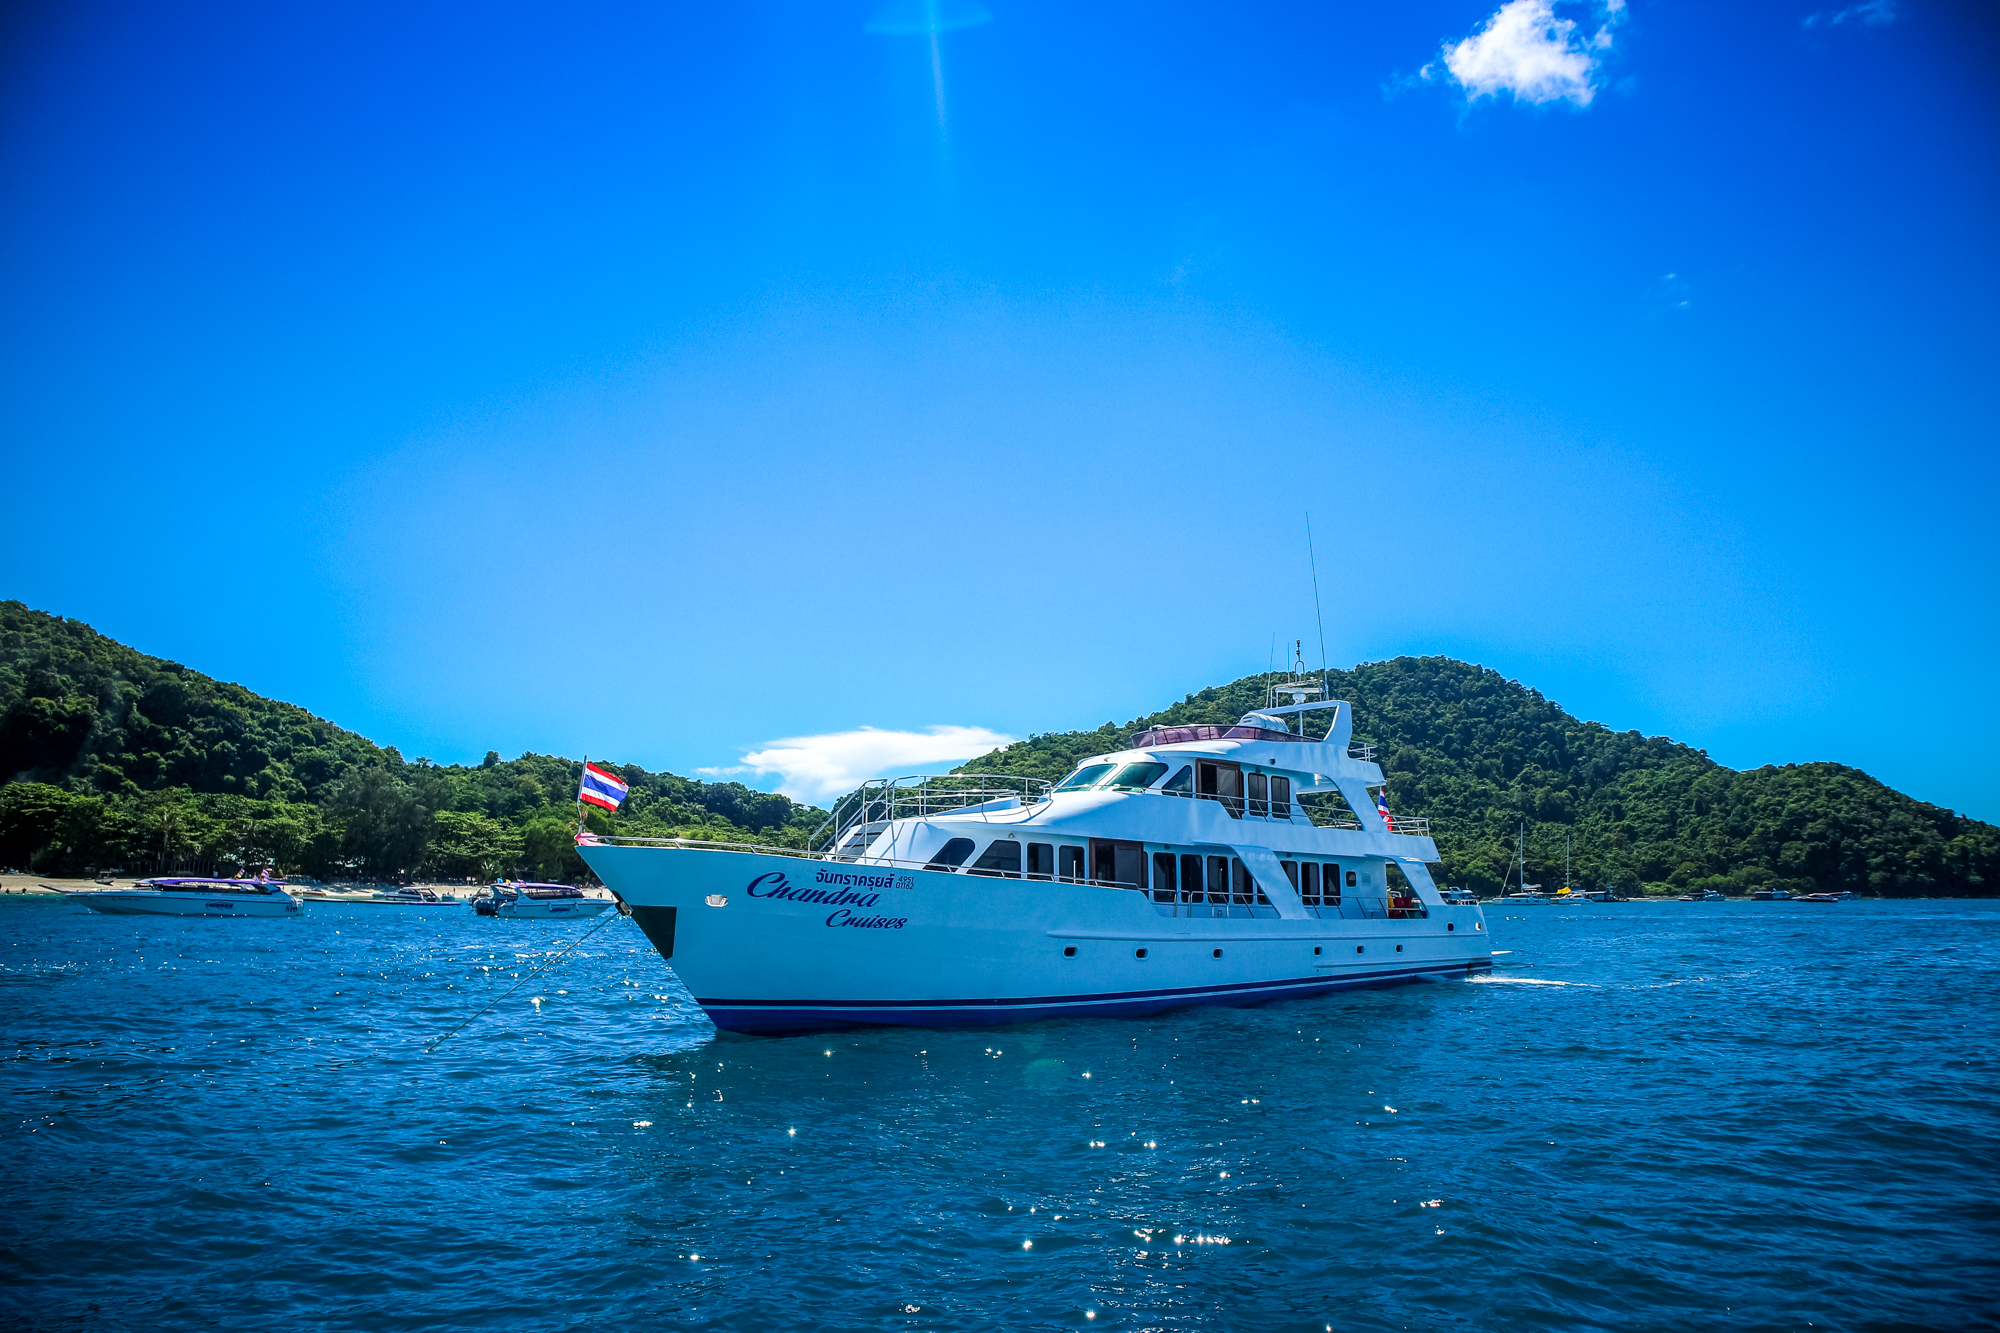 chandra-cruises-phuket-yacht-charter-raya-island-20180607-assama (1 of 1)